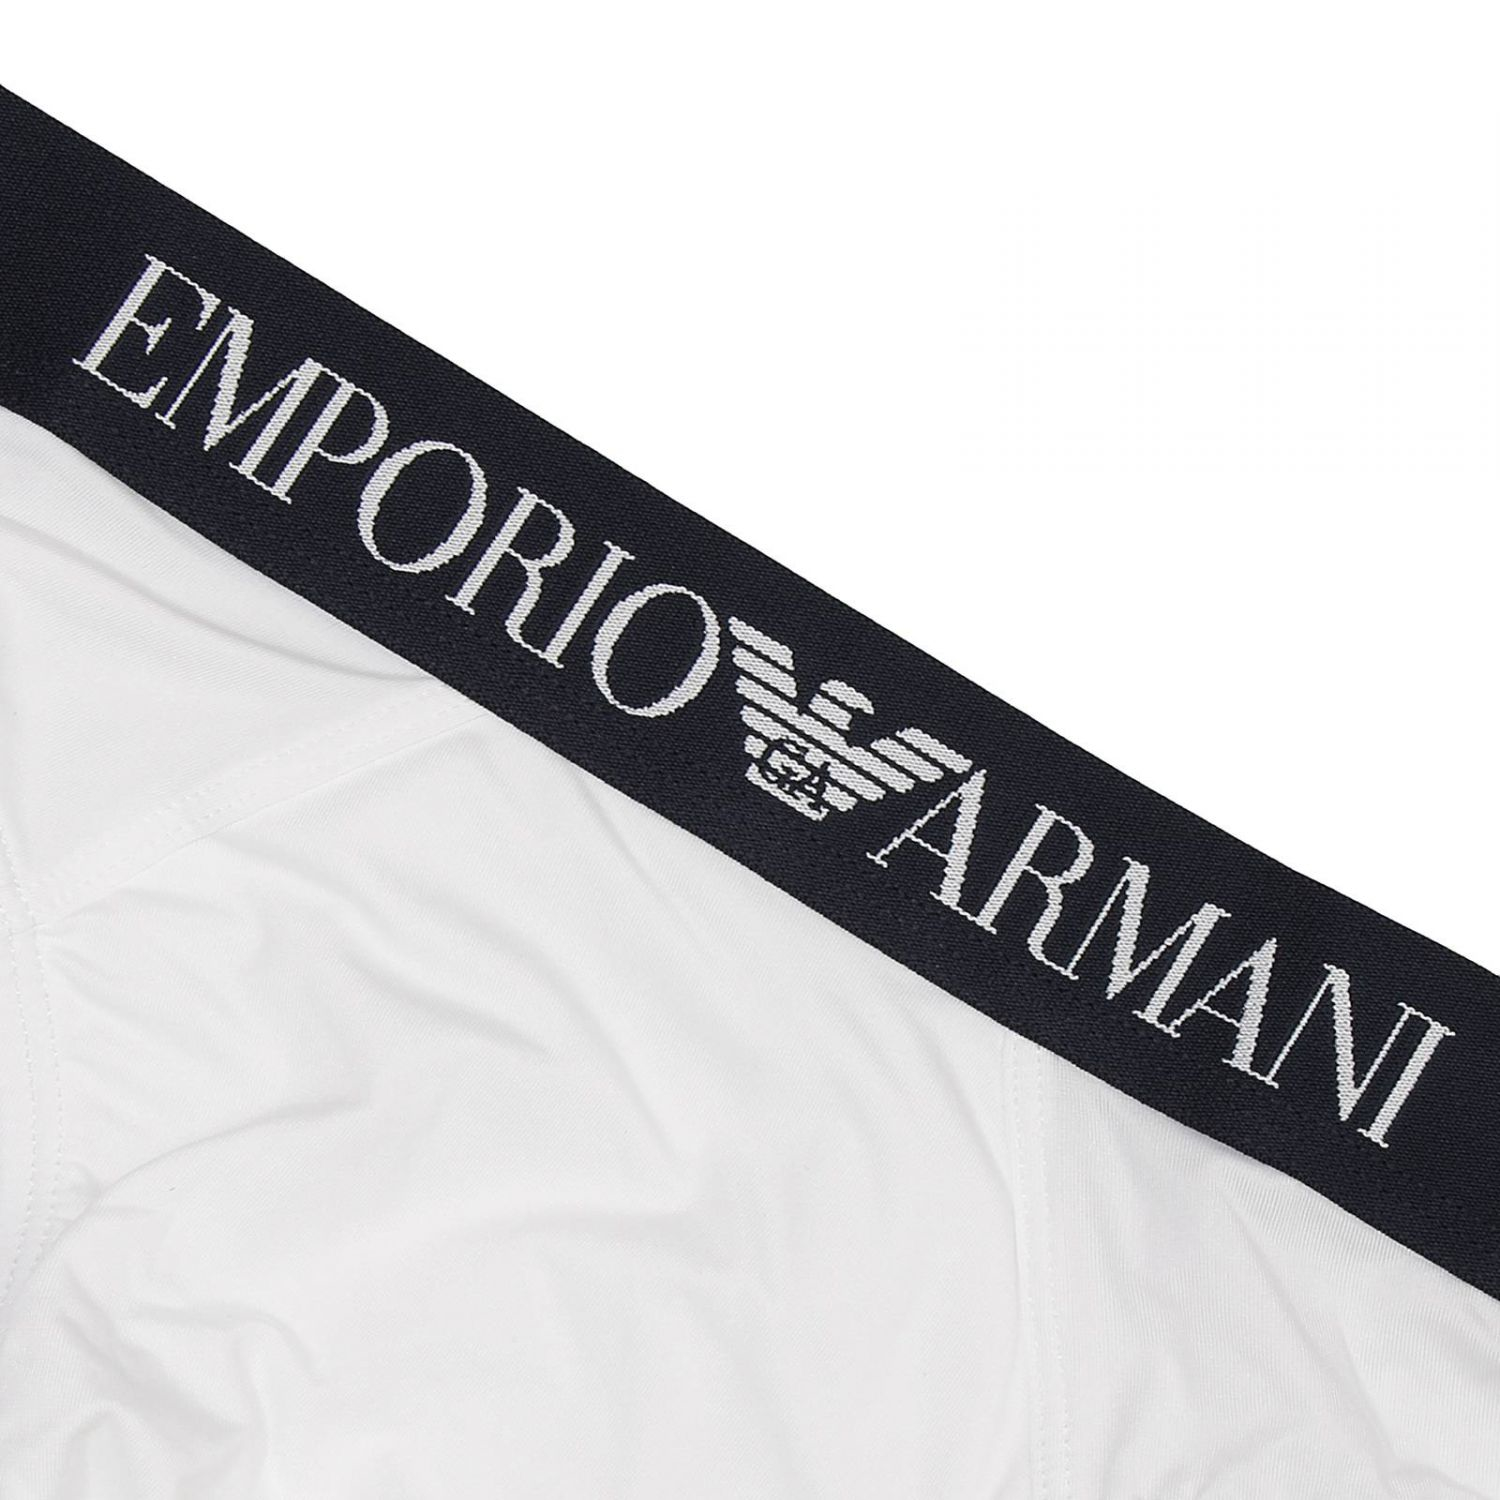 Lyst - Emporio Armani Giorgio Armani Men's Underwear in White for Men